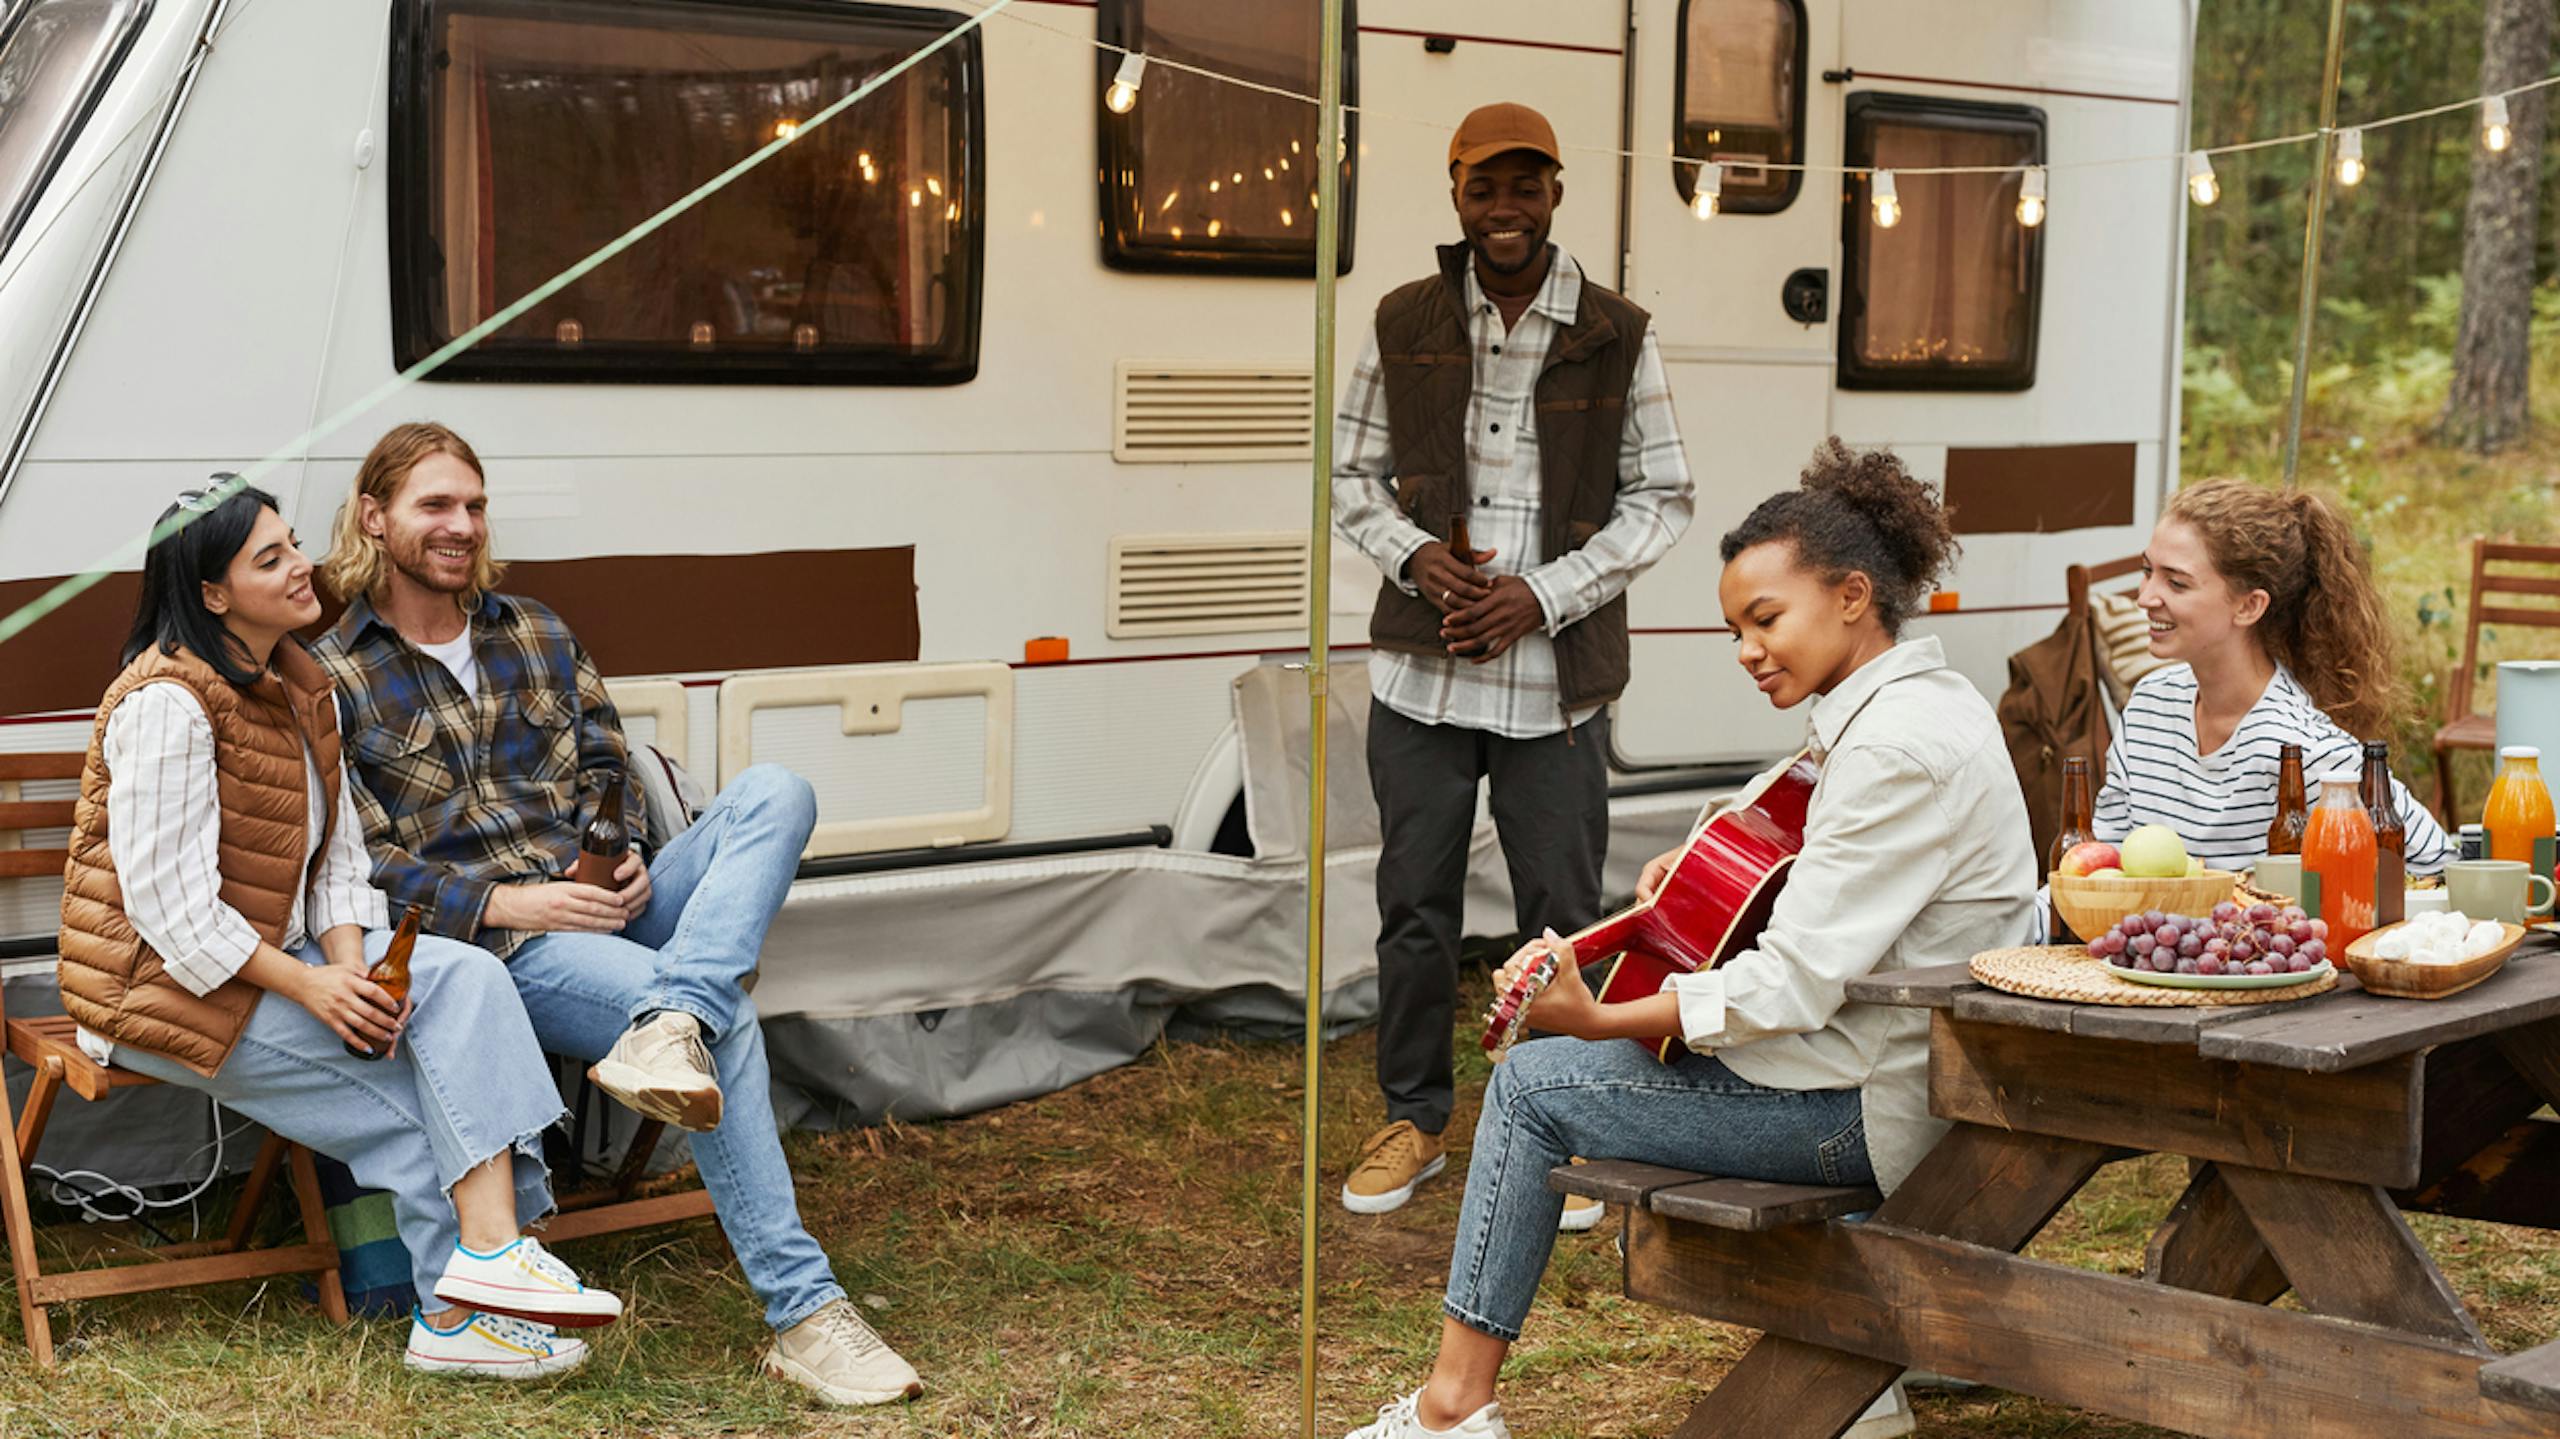 Jeunes jouant de la guitare à l’extérieur d'une caravane dans un camping
